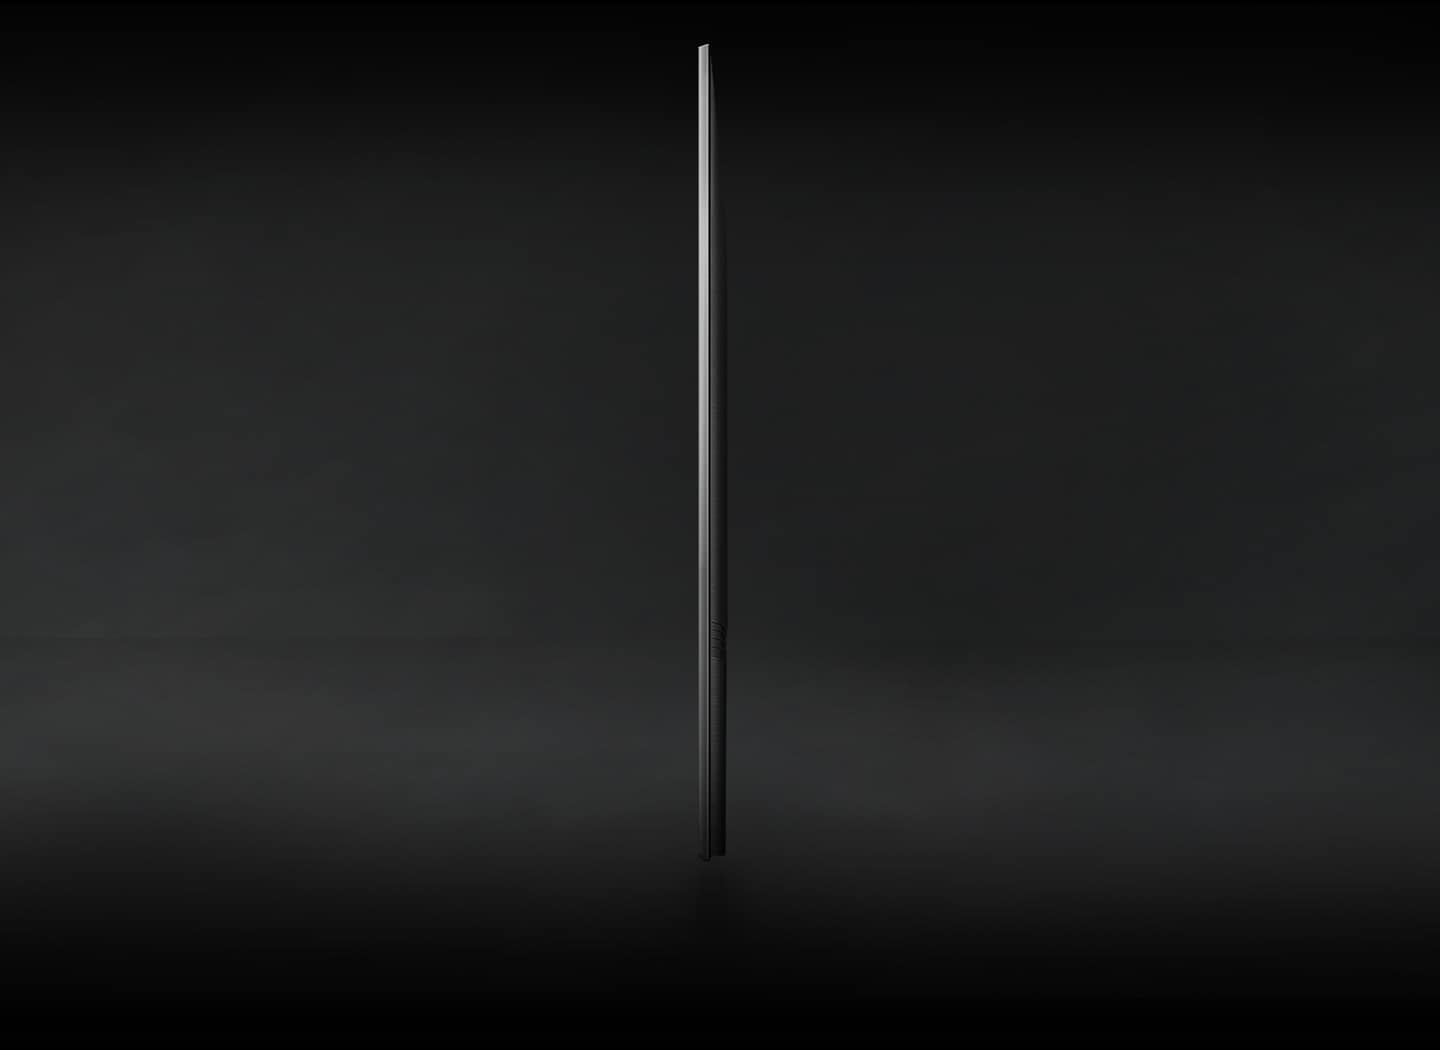 Le profil latéral du téléviseur Crystal UHD est exposé pour montrer son design ultra fin.